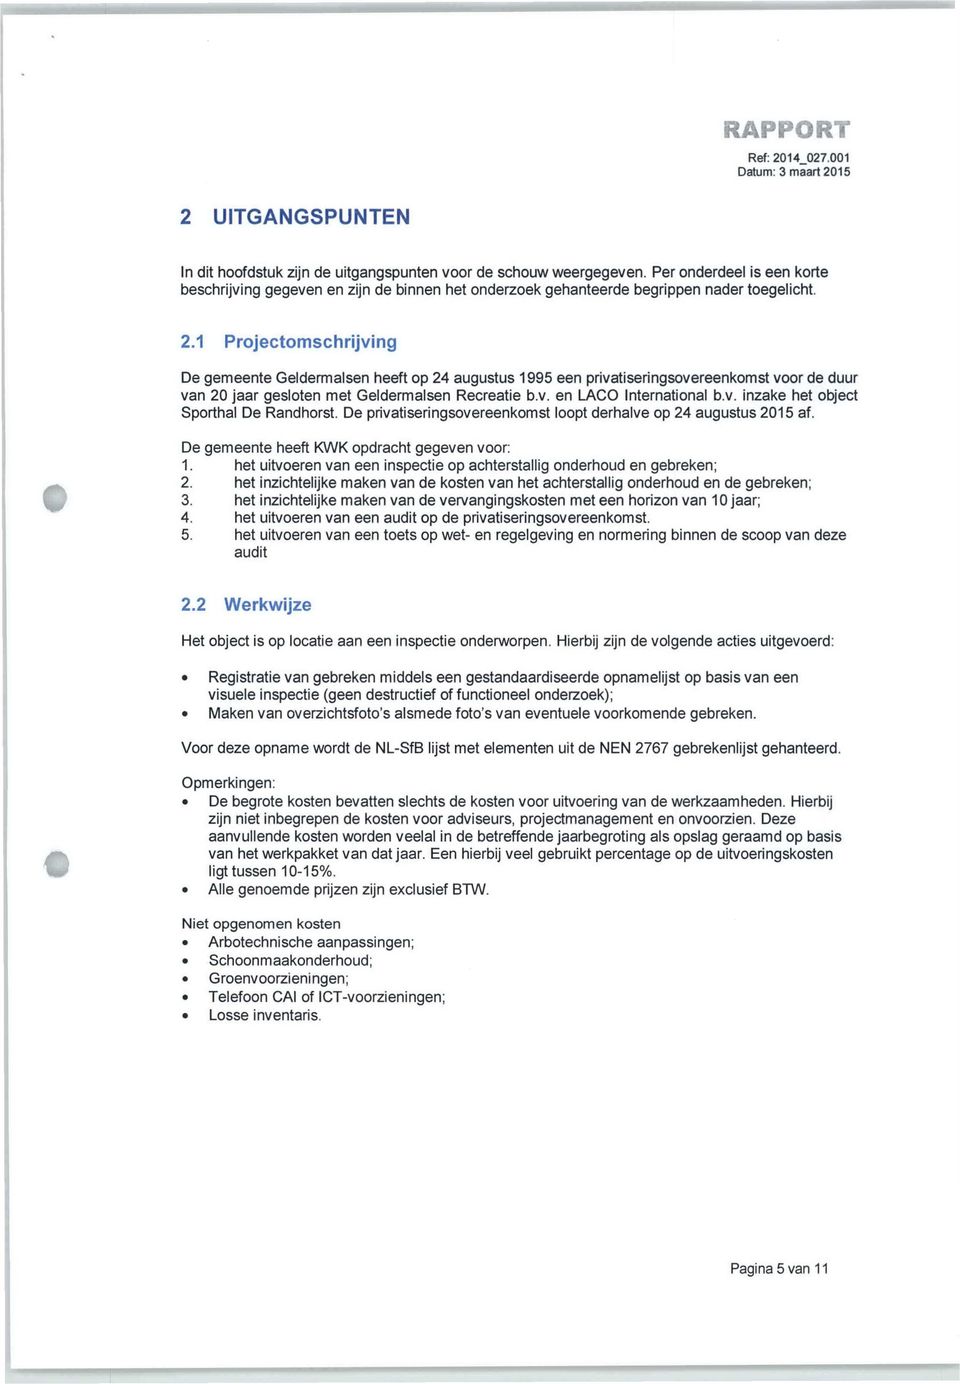 1 Projectomschrijving De gemeente Geldermalsen heeft op 24 augustus 1995 een privatiseringsovereenkomst voor de duur van 20 jaar gesloten met Geldermalsen Recreatie b.v. en LACO International b.v. inzake het object Sporthal De Randhorst.